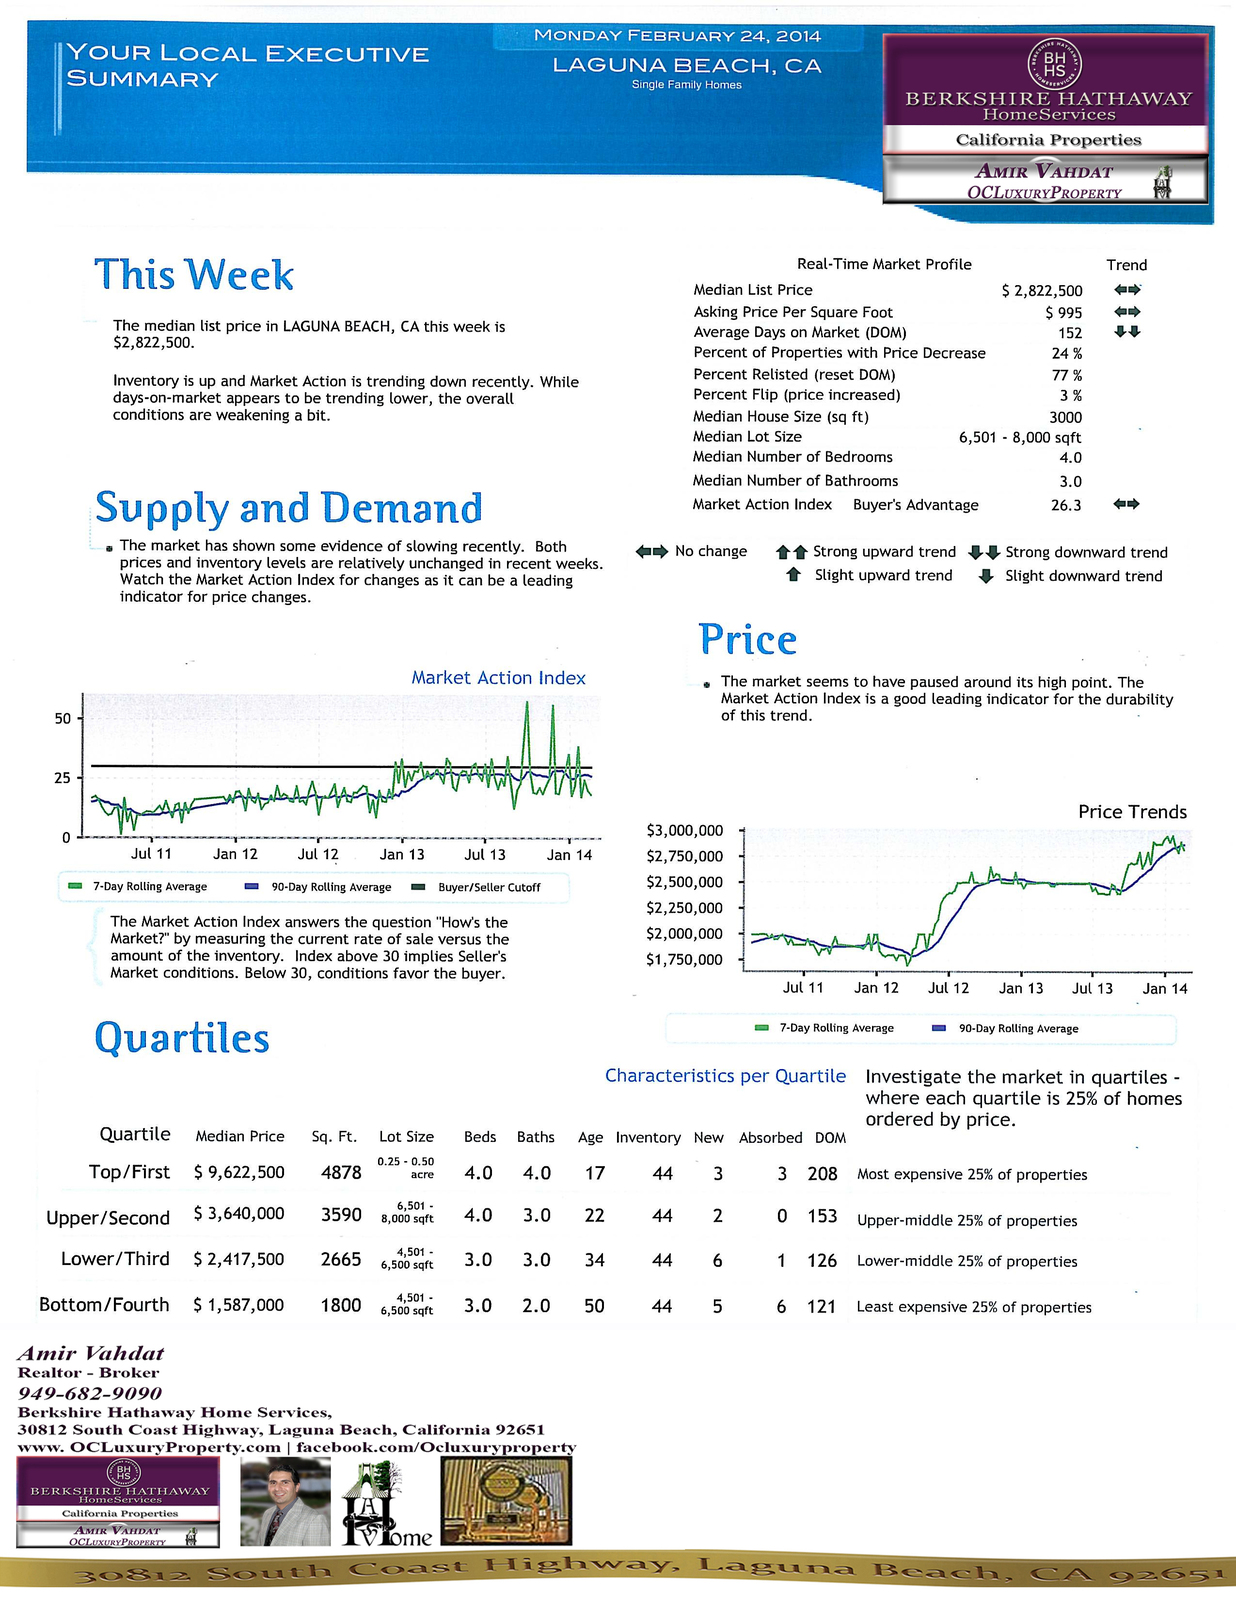 Laguna Beach Homes Executive Summary & Statistics Feb 24th, 2014.jpg